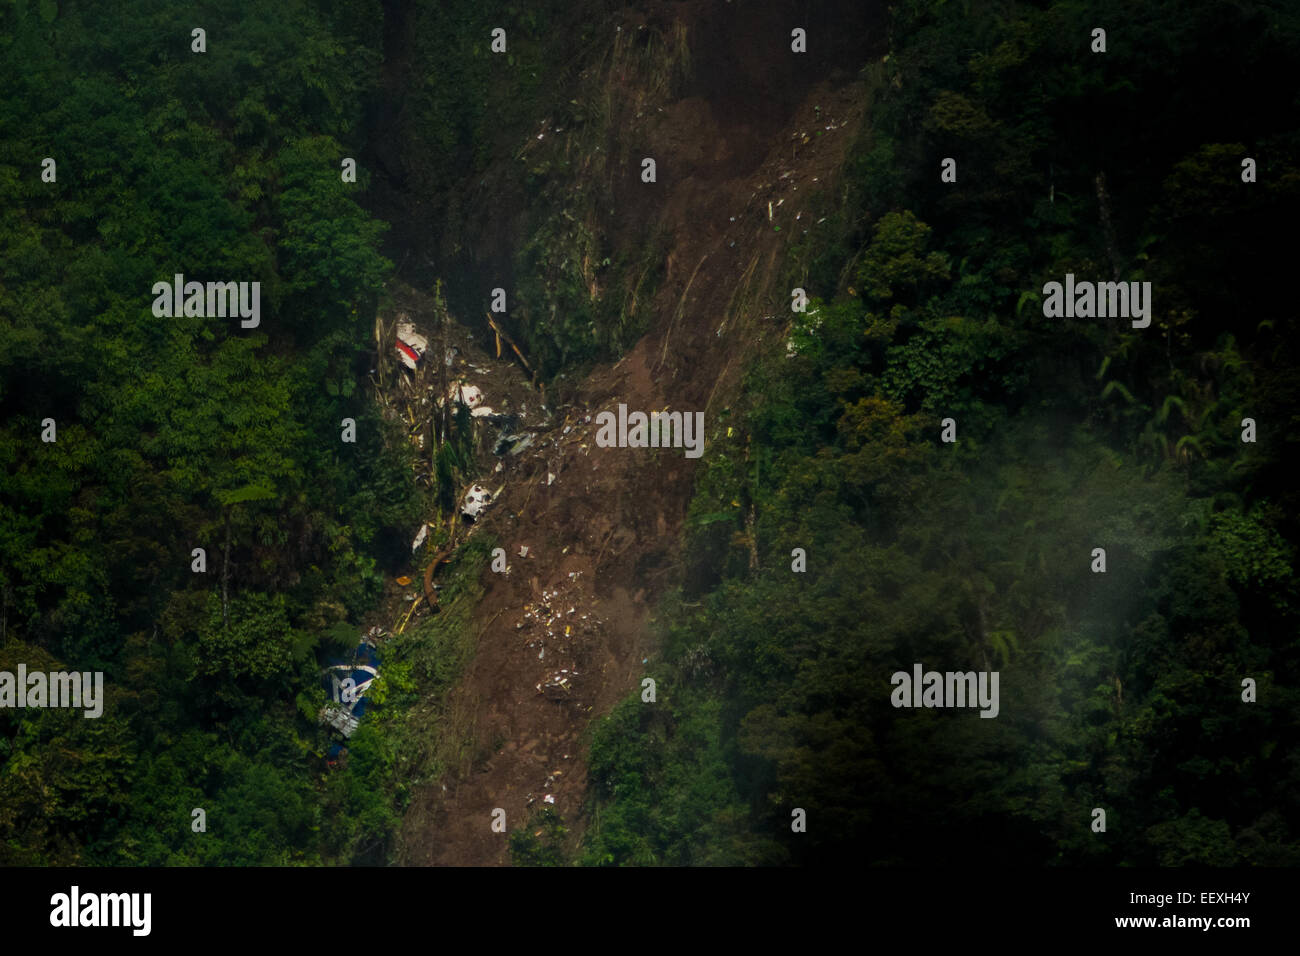 Monte Salak, Giava Occidentale, Indonesia. 11 maggio 2012. Sukhoi Superjet 100 (SSJ-100) crash sito, due giorni dopo l'incidente. Foto di archivio. Reportage. Foto Stock